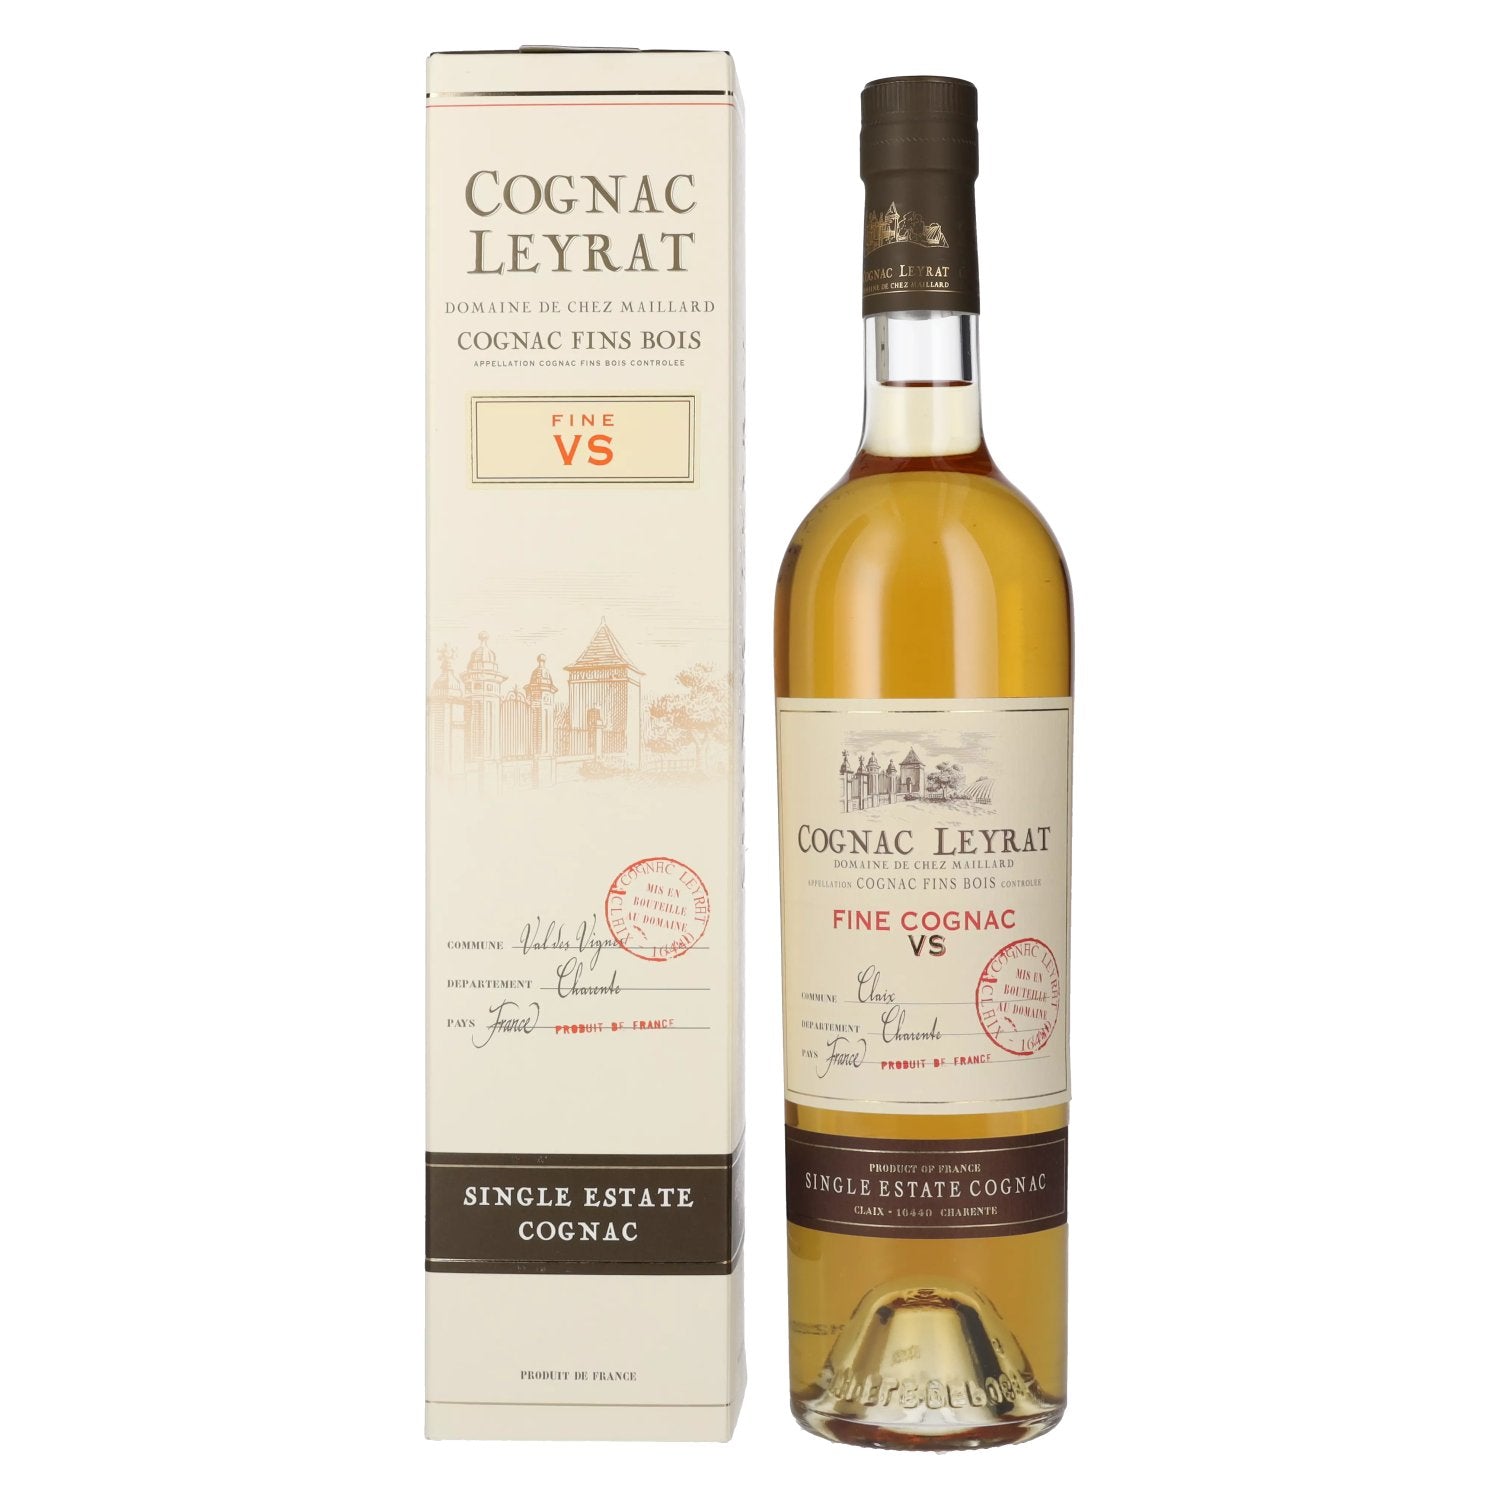 Cognac Leyrat VS Fine Single Estate Cognac GB 40% Vol. 0,7l in Giftbox